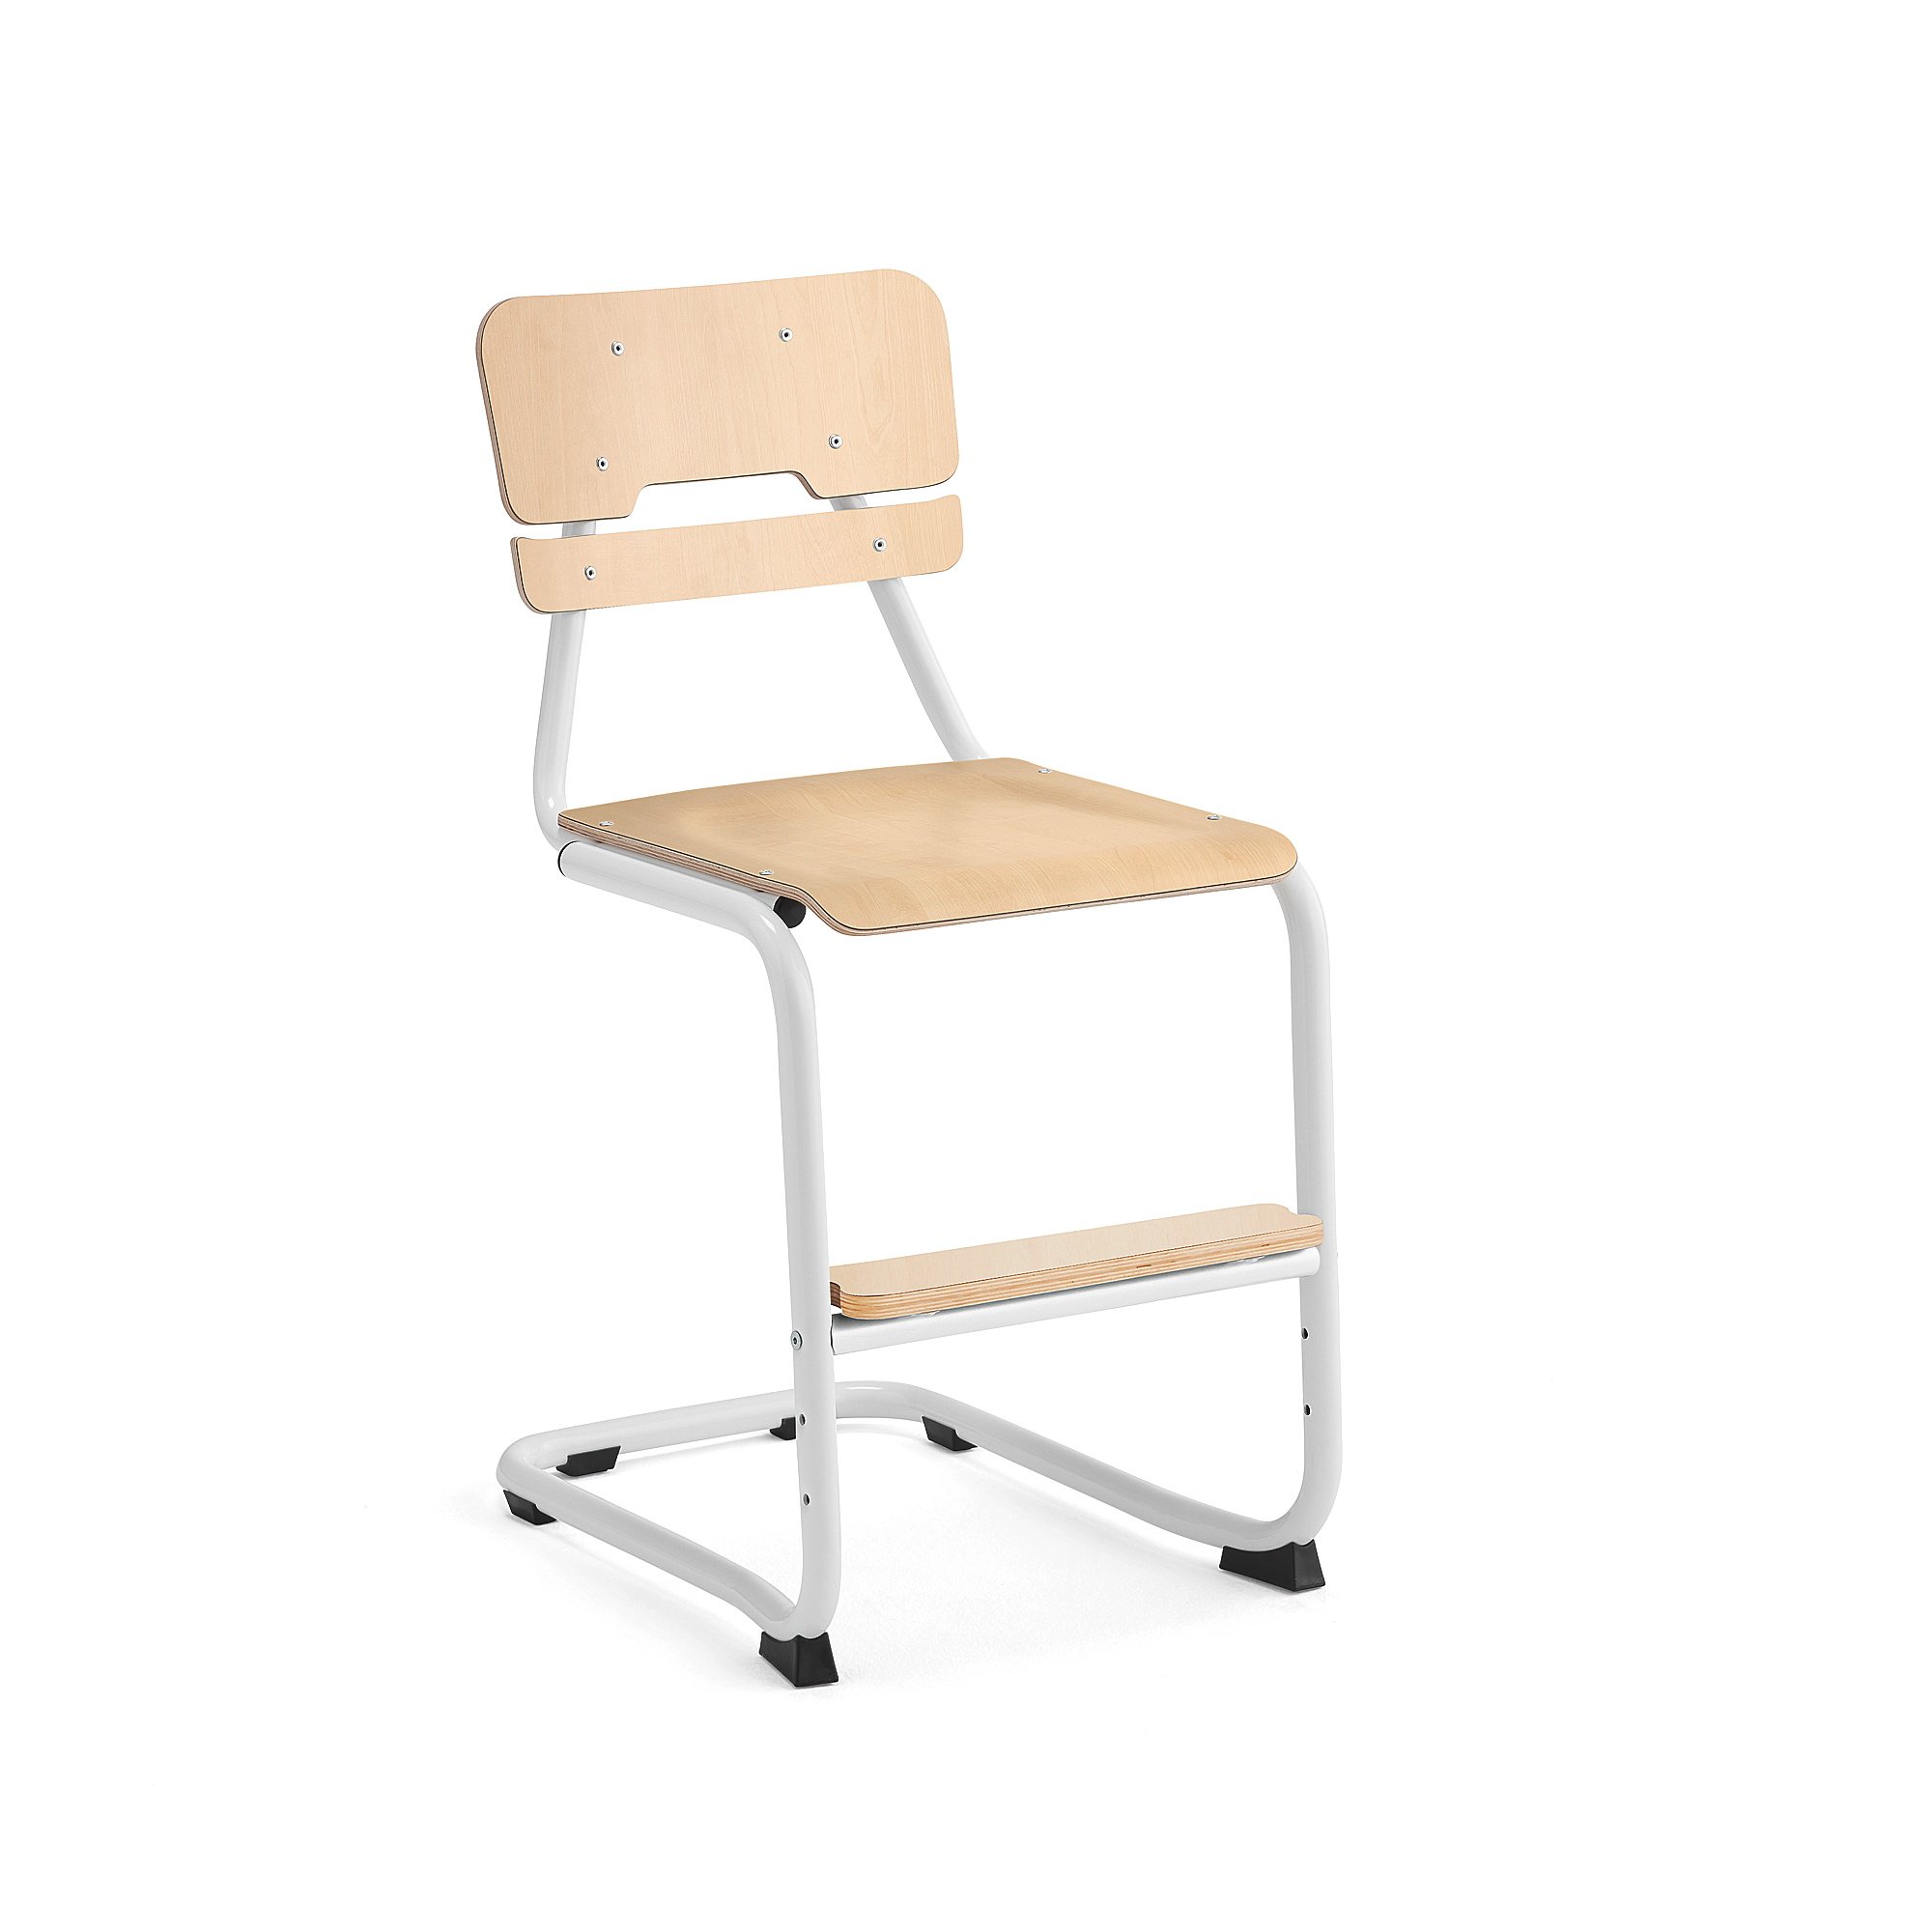 Školní židle LEGERE III, výška 500 mm, bílá, bříza